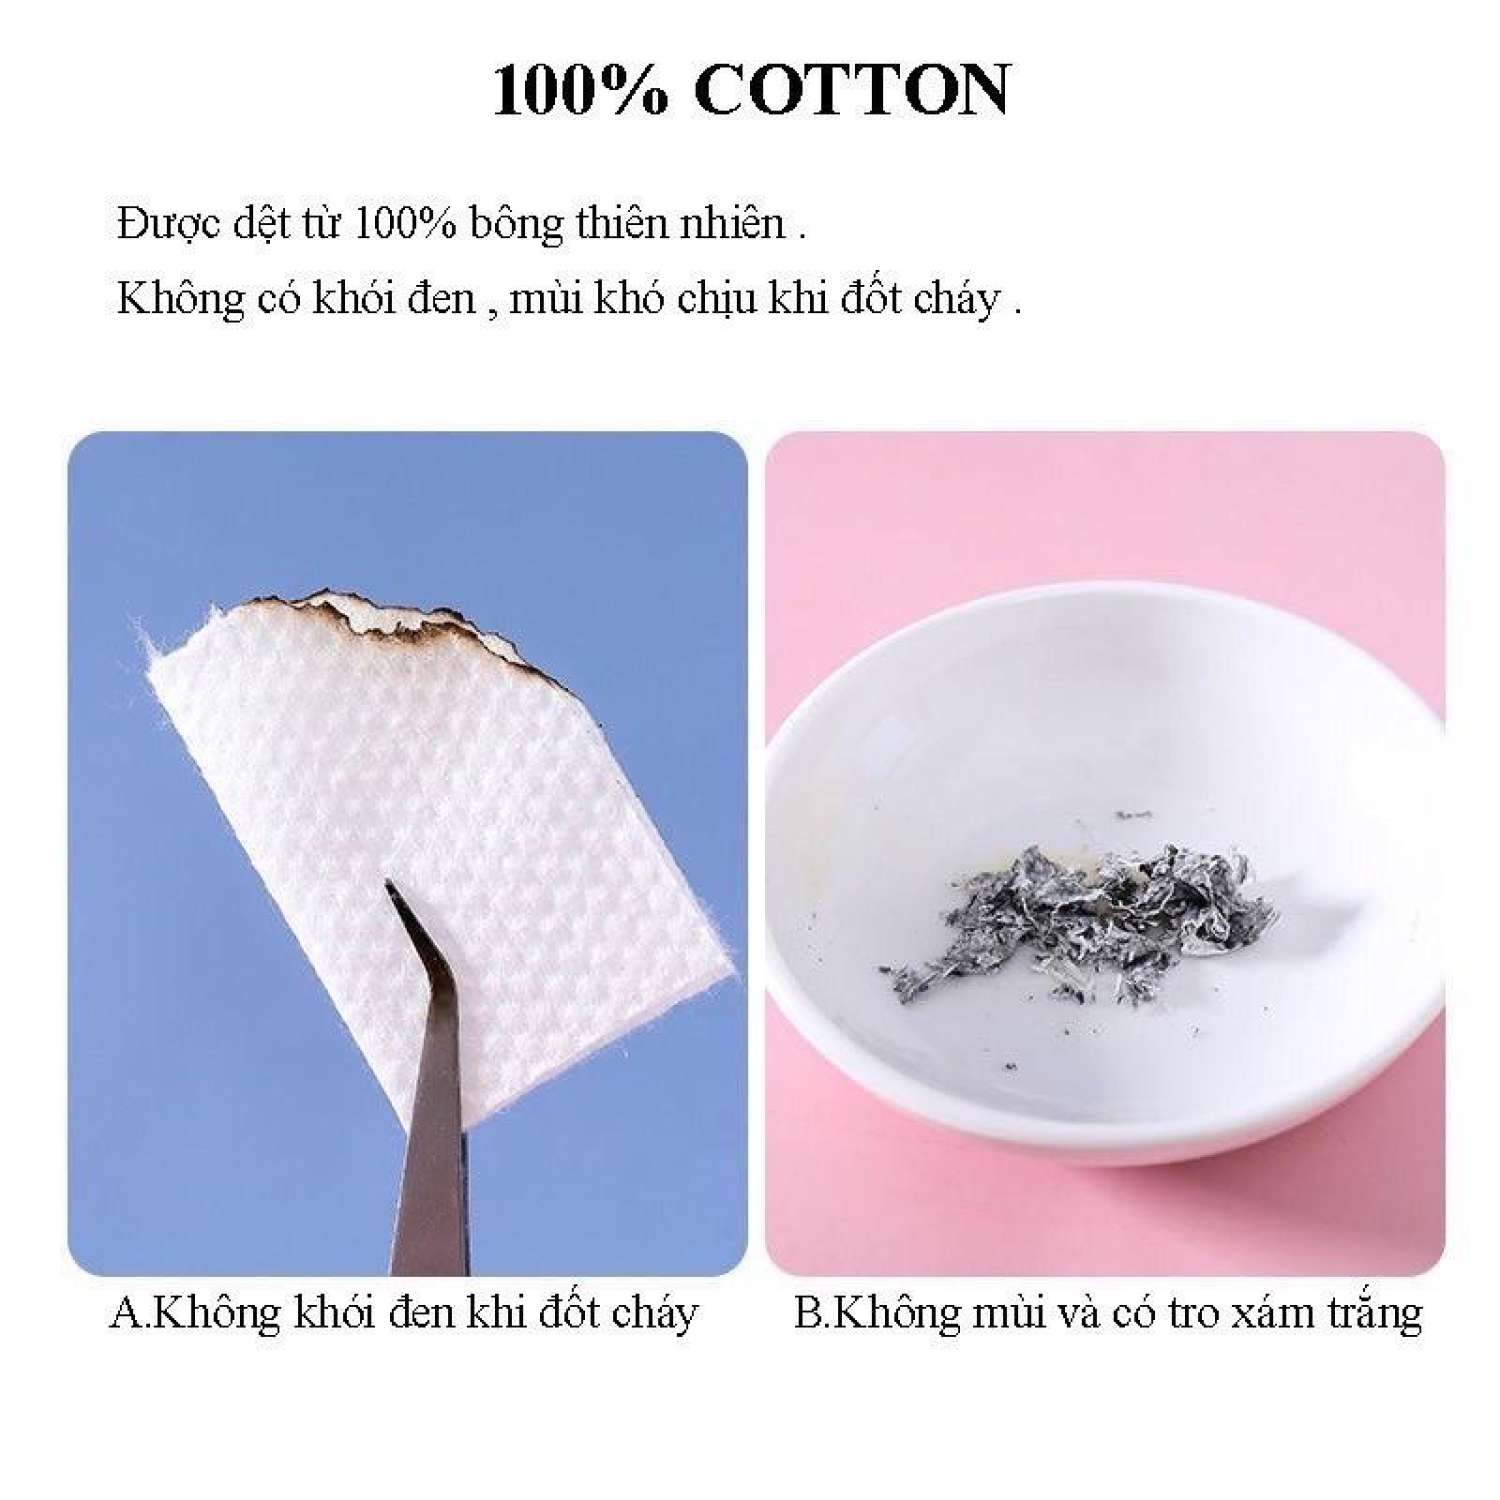 Khăn mặt khô dùng 1 lần - Cuộn tẩy trang, khăn giấy lau cotton đa năng tiện lợi, dễ mang theo